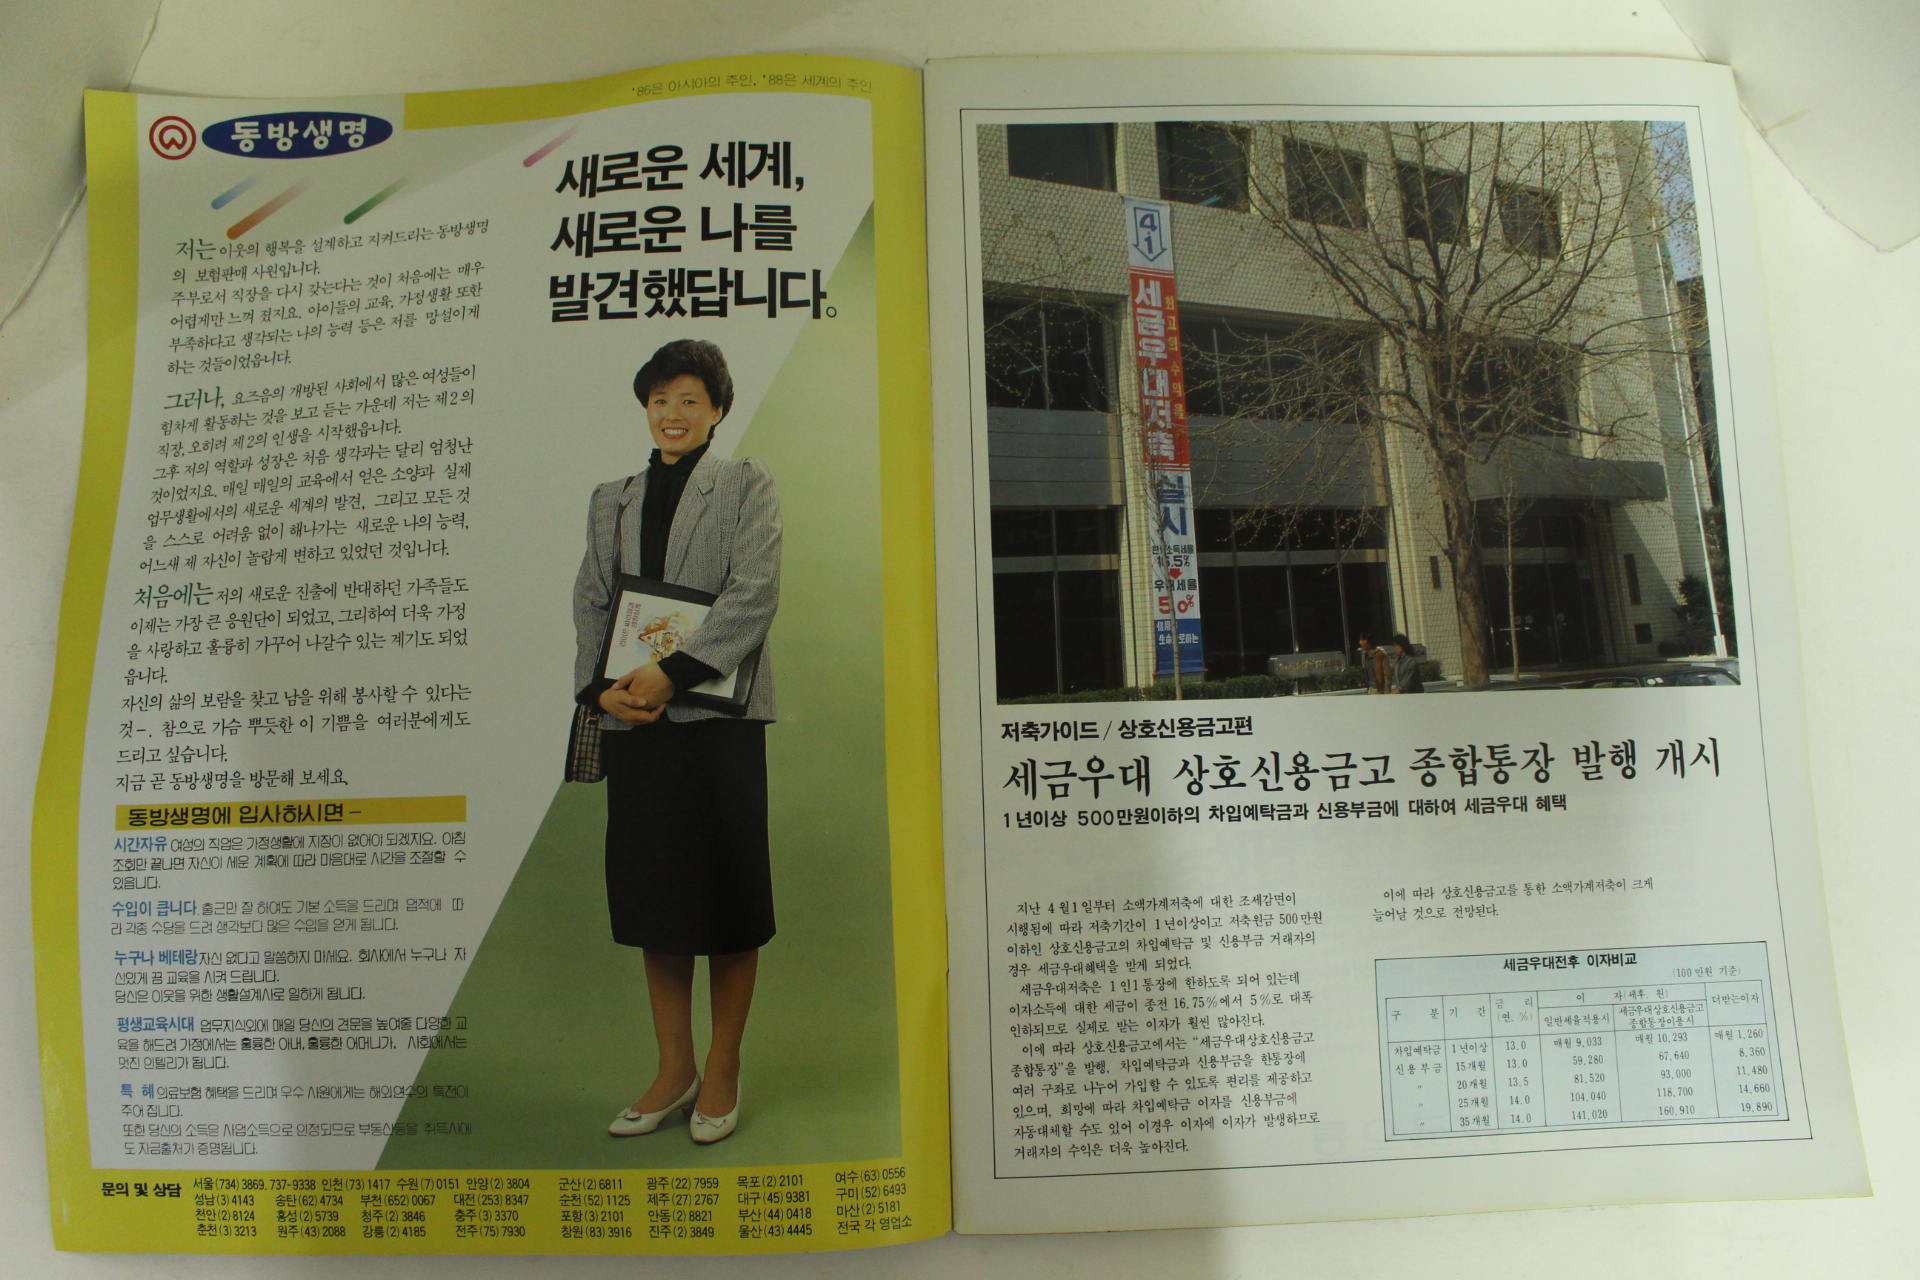 1986년 월간화보 오늘의 한국 5월호